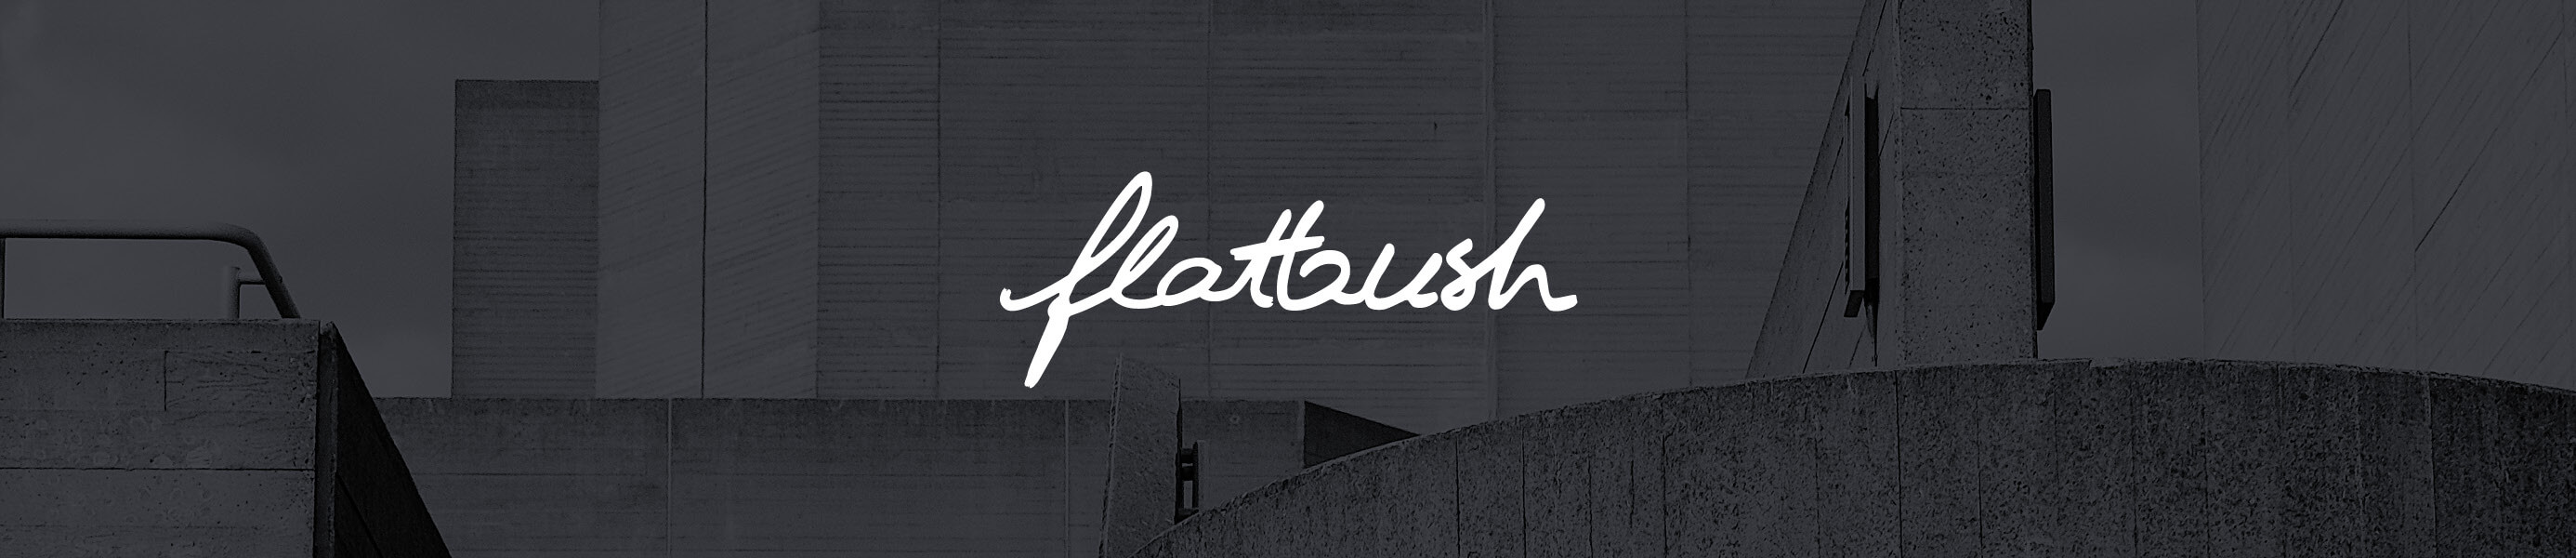 Flashbush